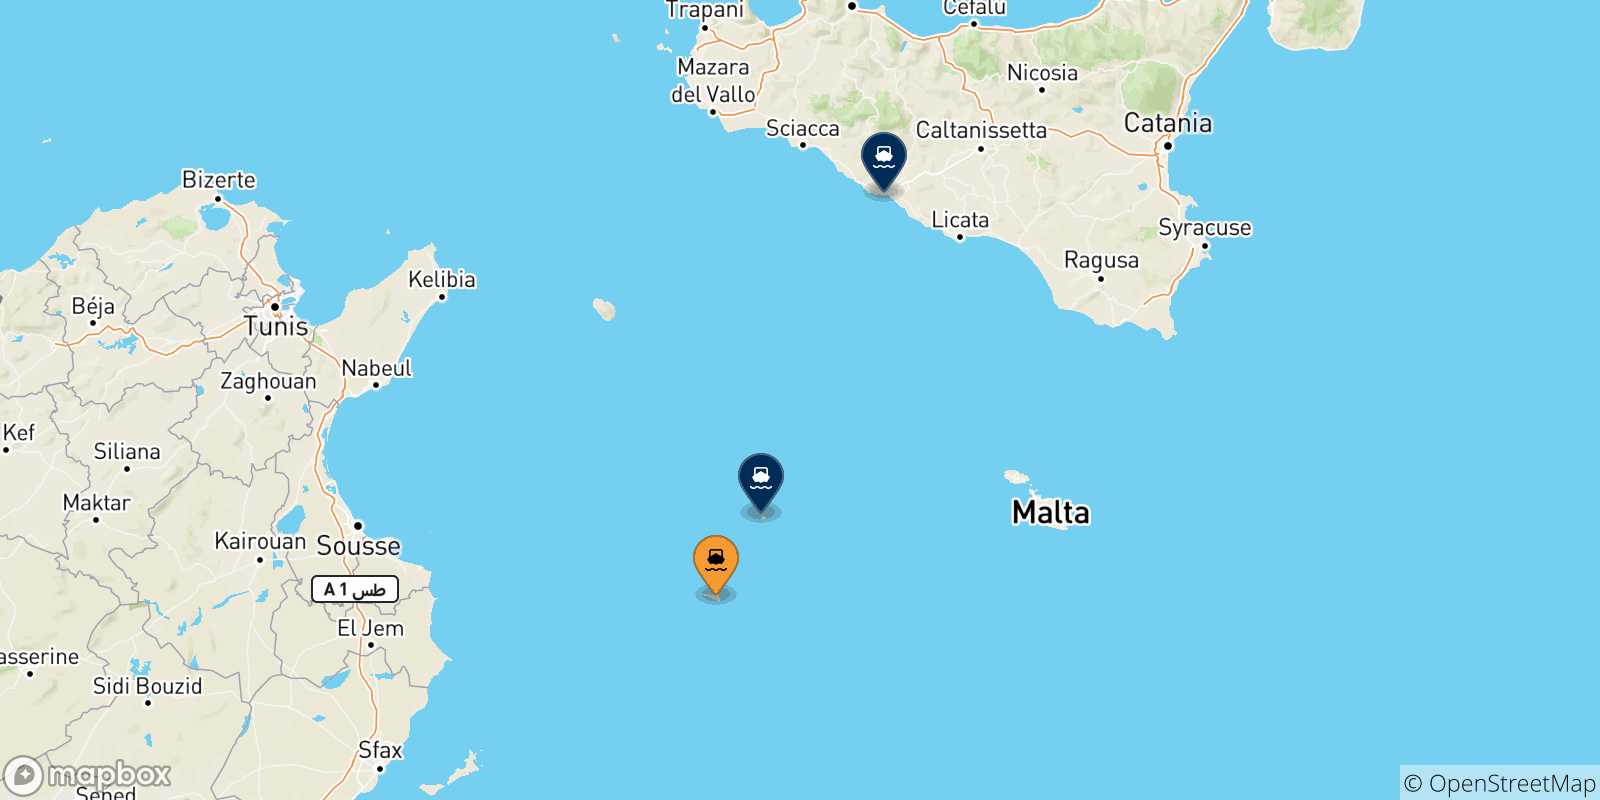 Mappa delle possibili rotte tra Lampedusa e l'Italia